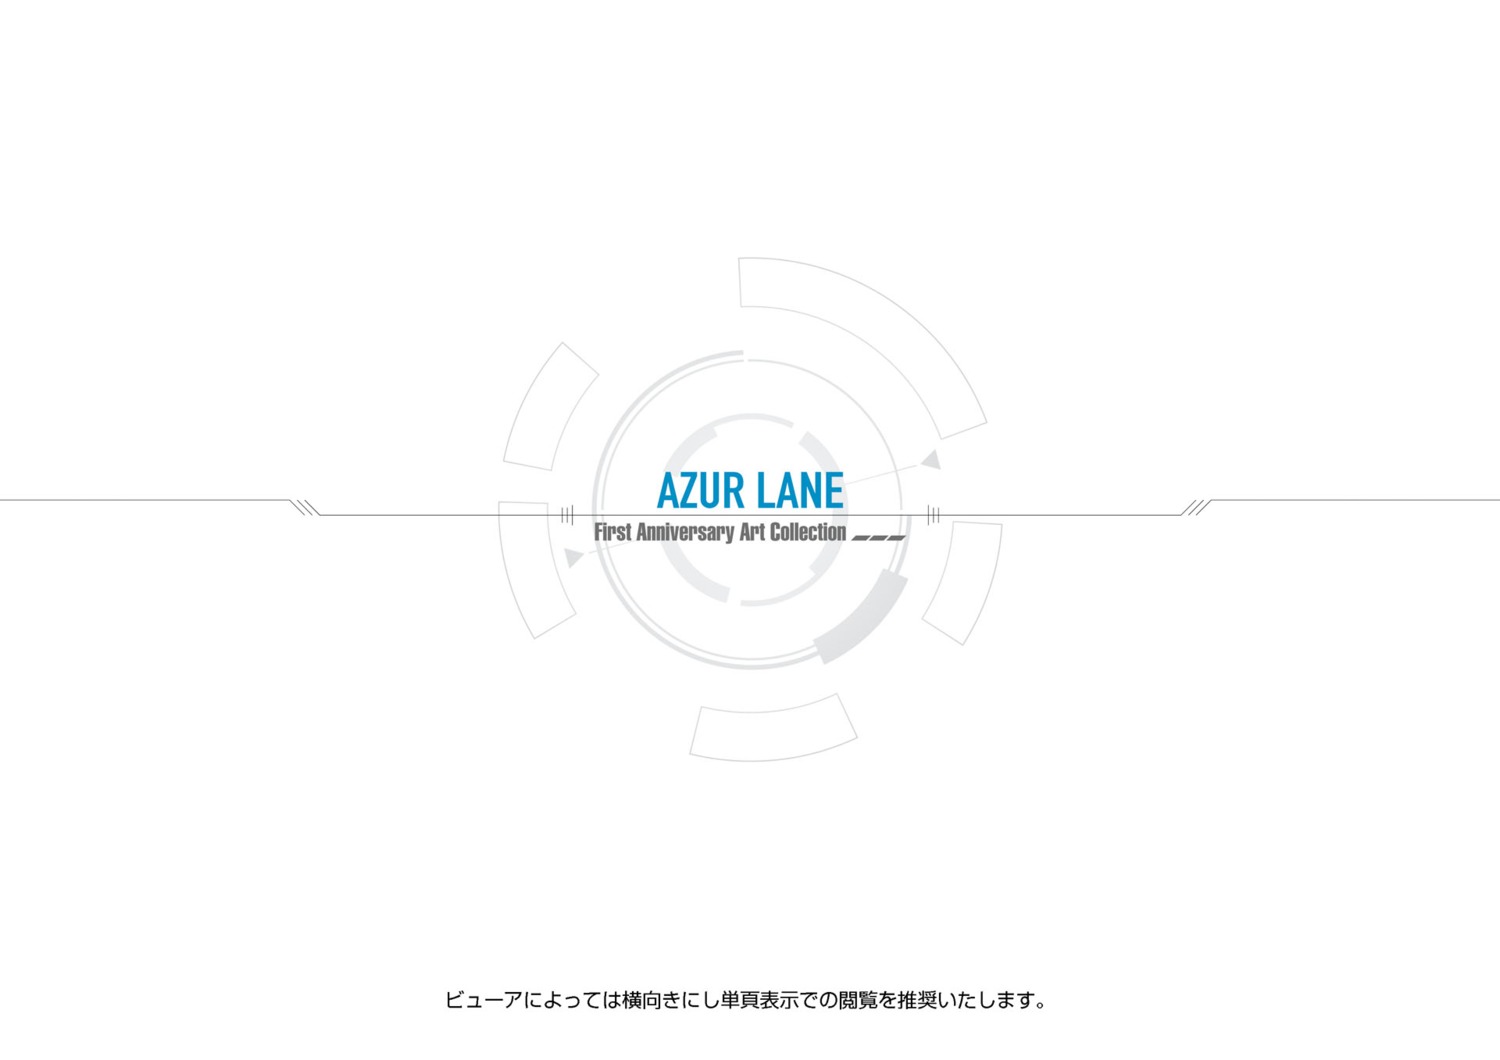 azur_lane text